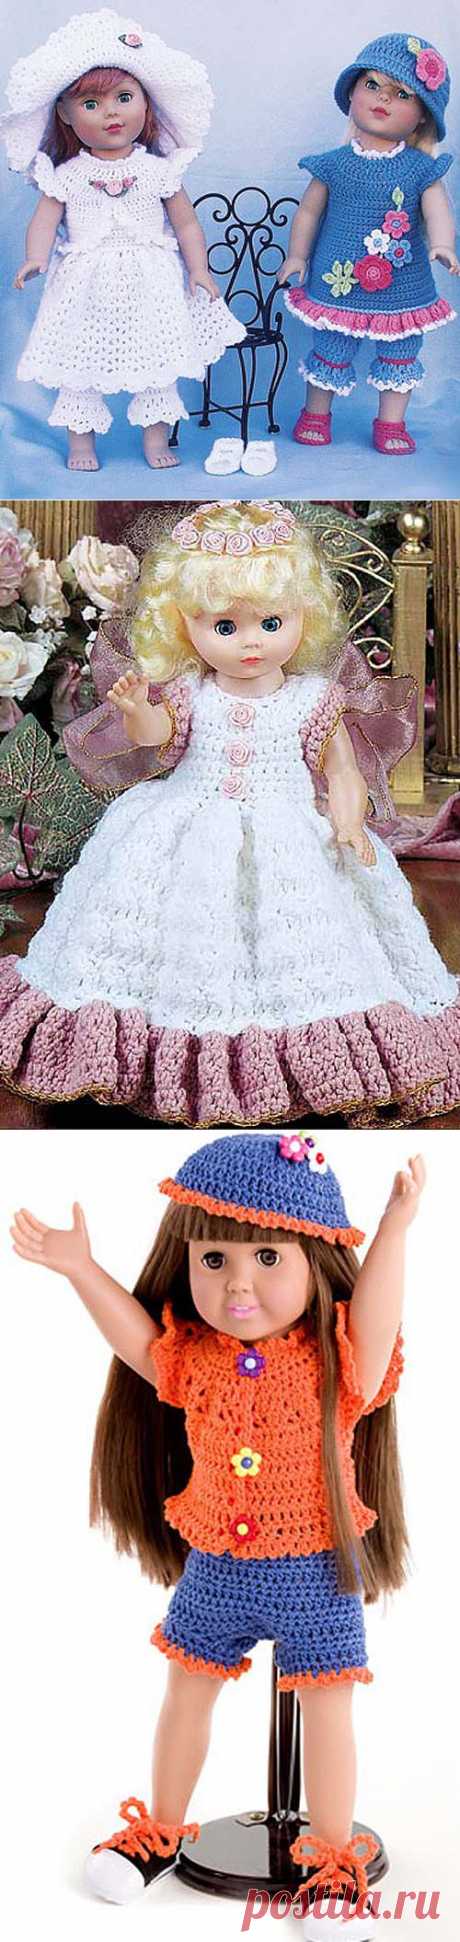 вязание для кукол схемы,вязание крючком одежда для кукол